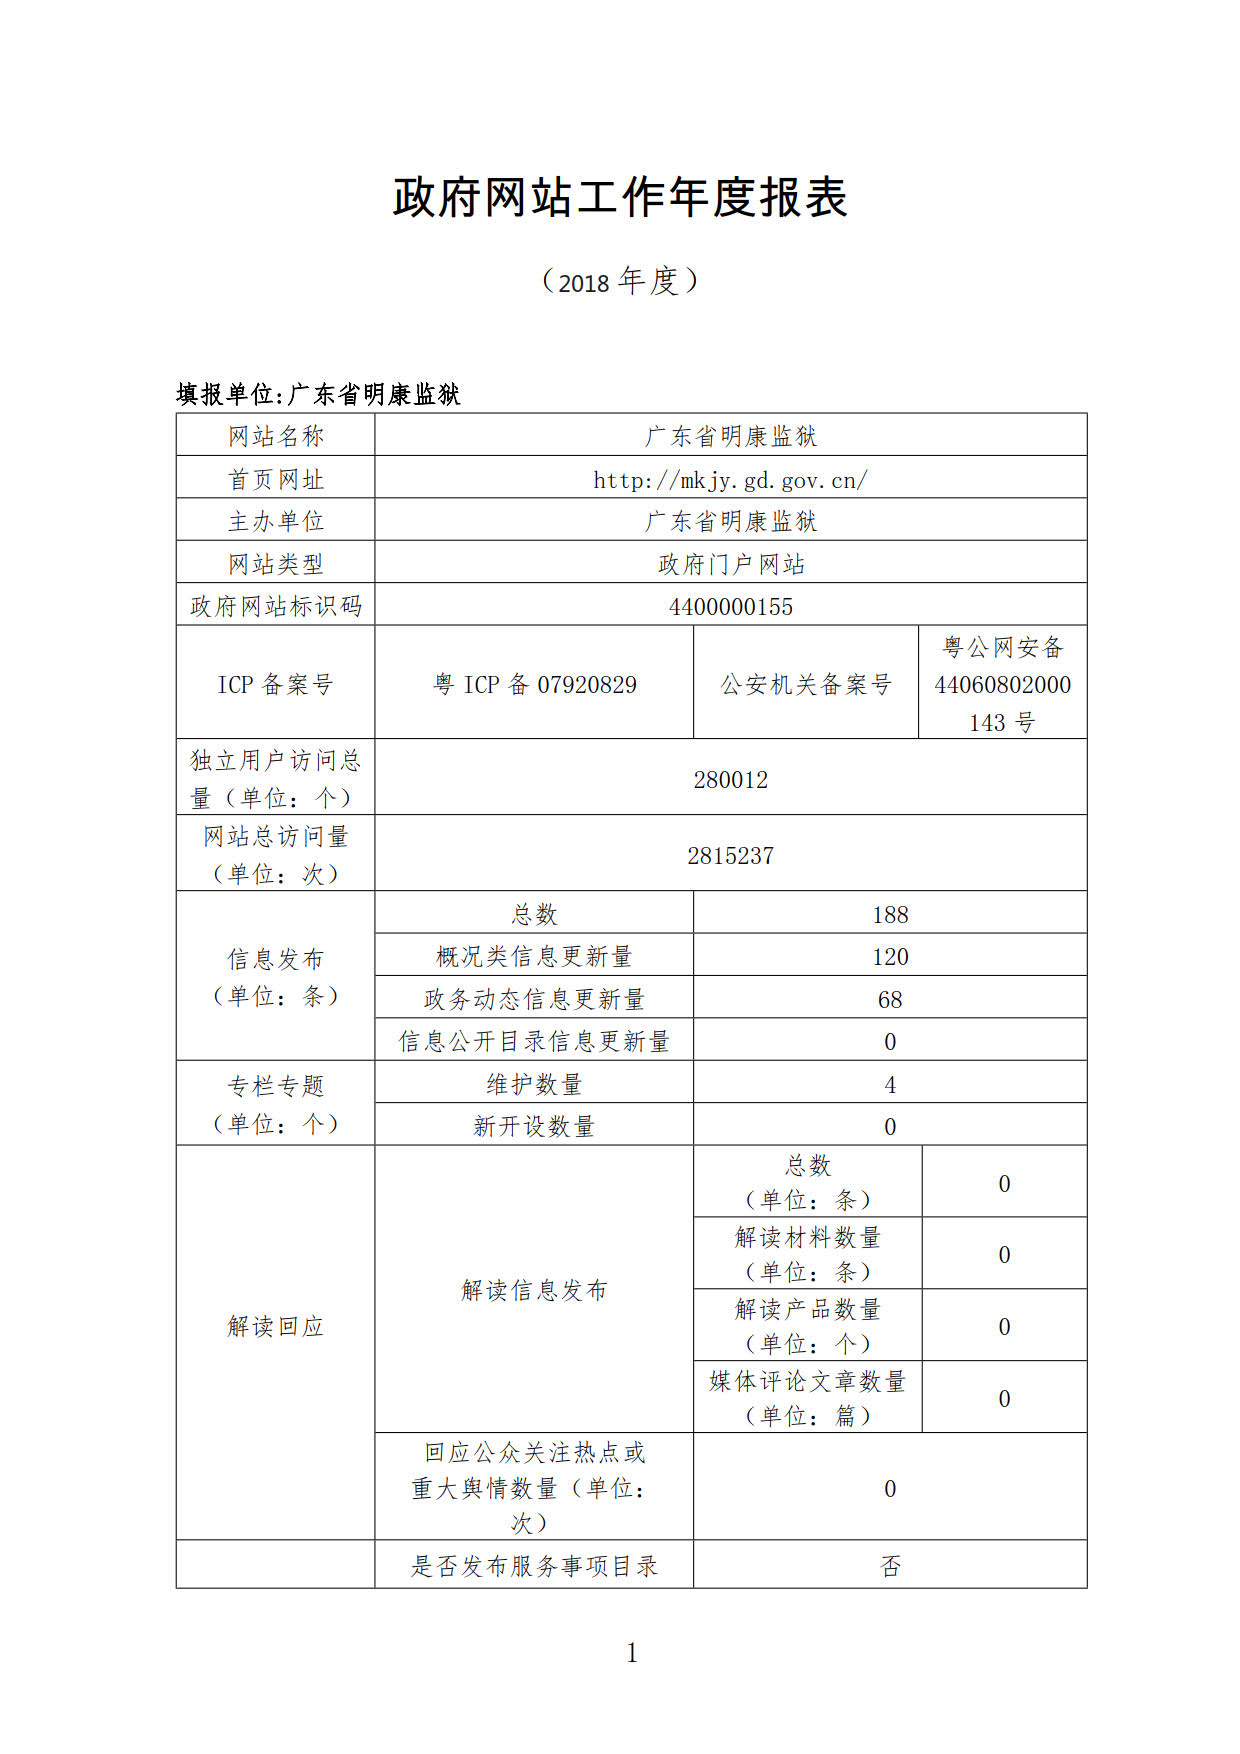 广东省明康监狱2018年政府网站工作年度报表1.jpg